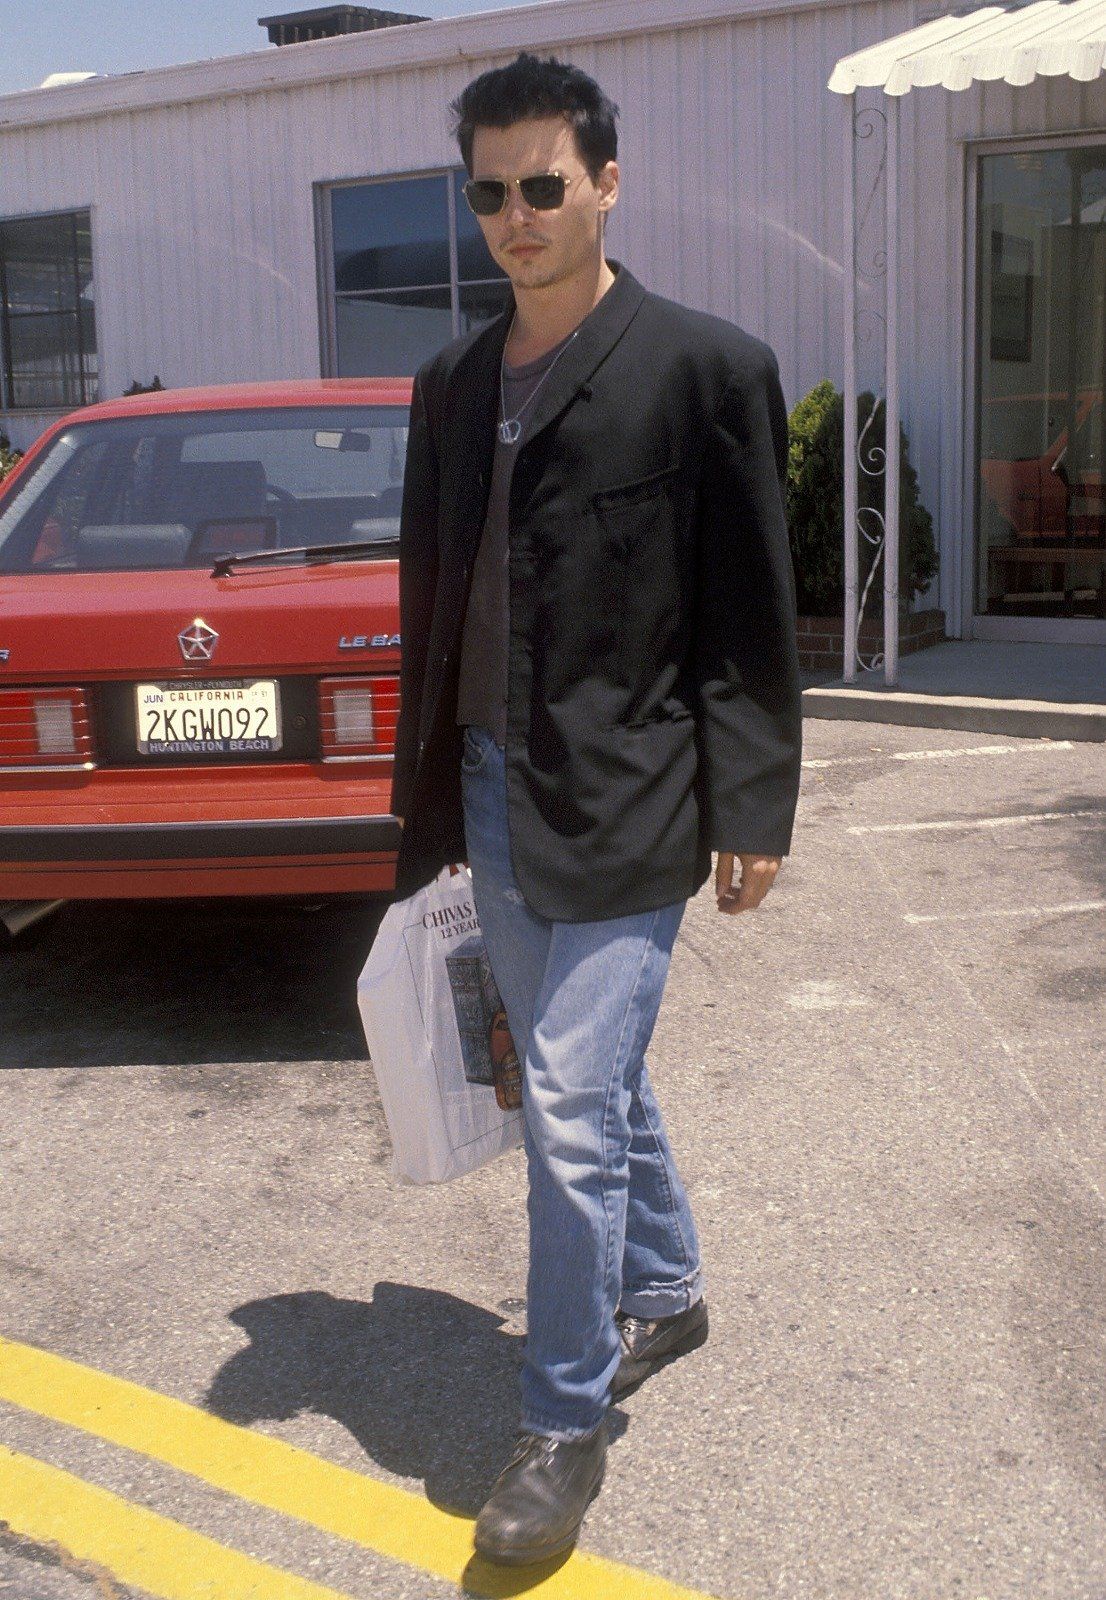 ハリウッドの異端児 ジョニー デップのファッション変遷50